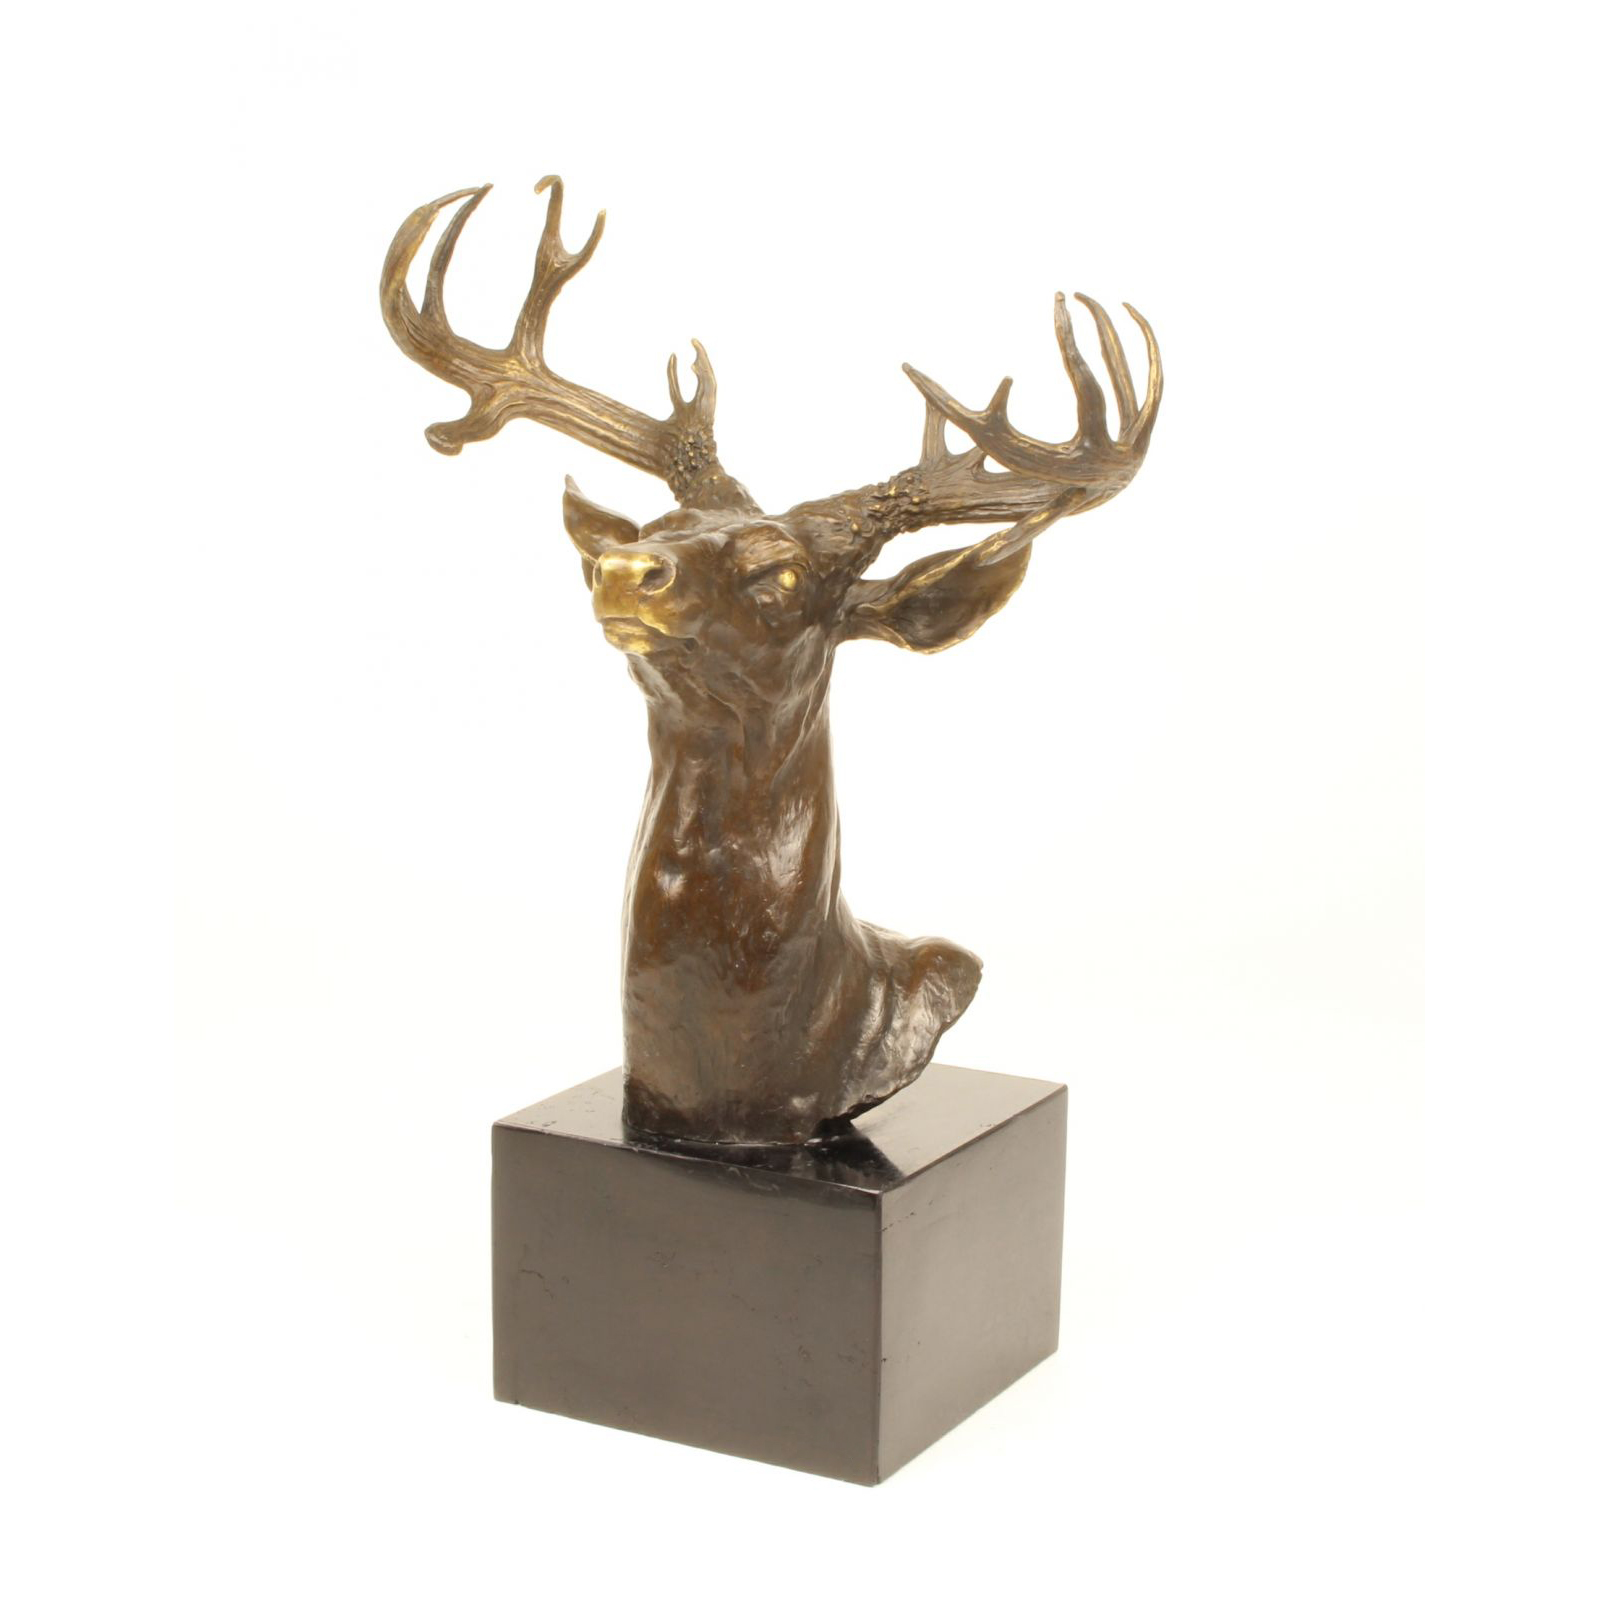 Deerhead bronze statue